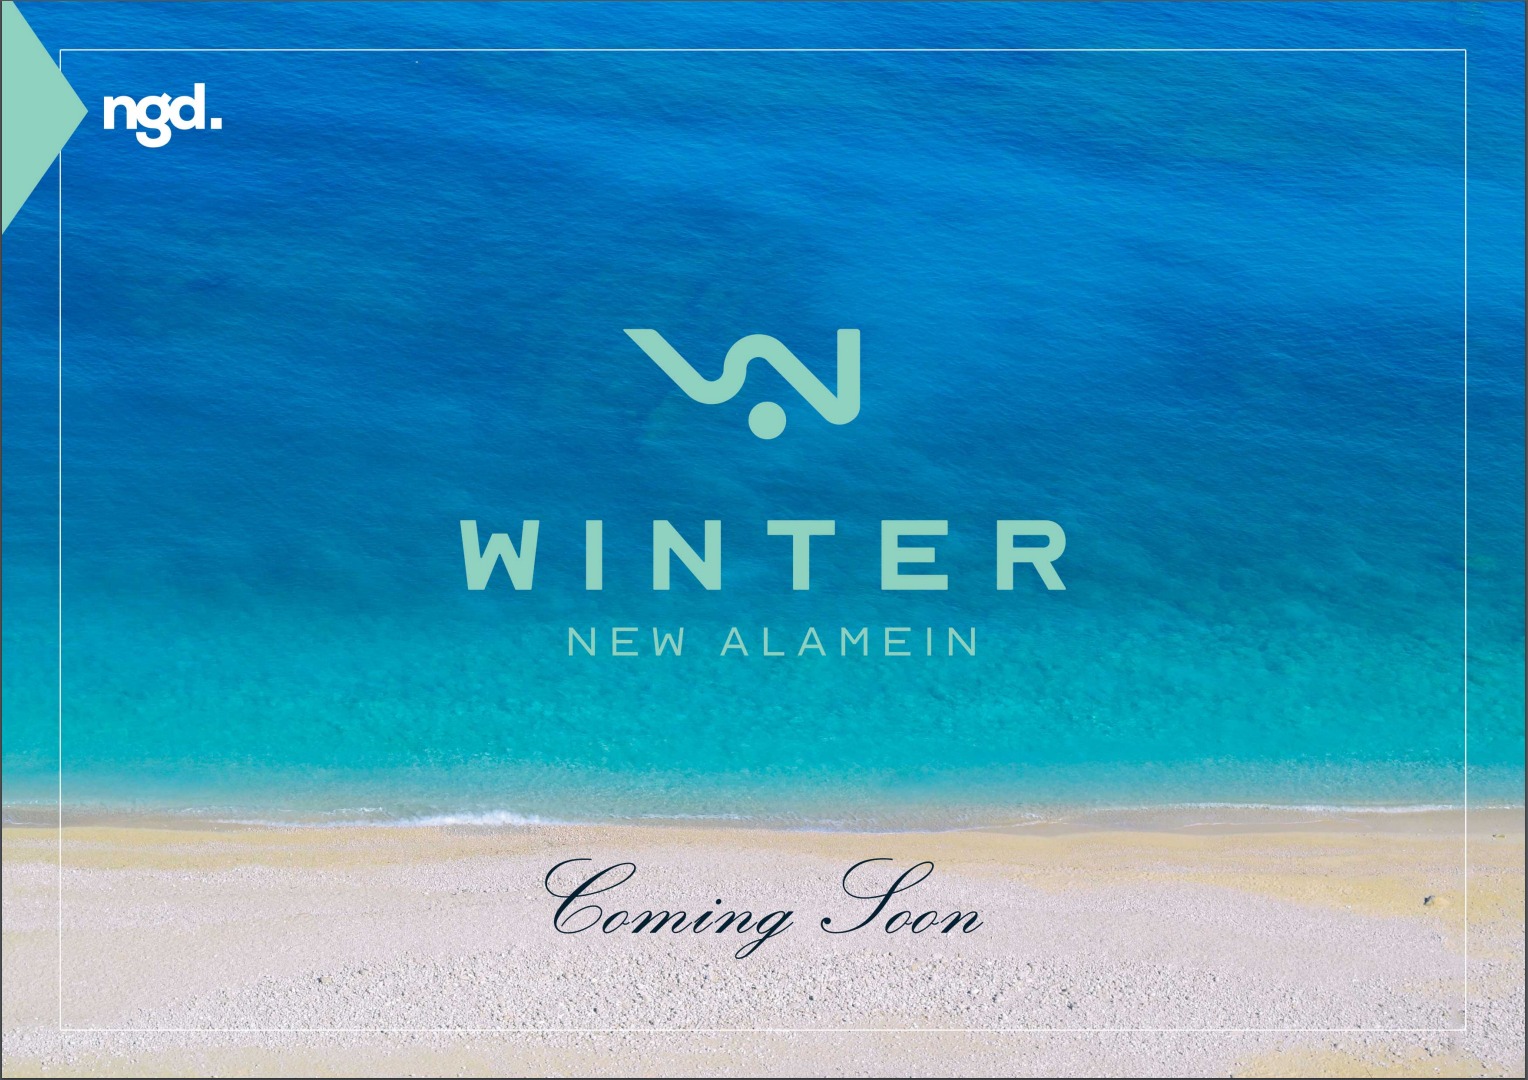 منتجع وينتر العلمين الجديدة -  Winter Resort New Alamein 